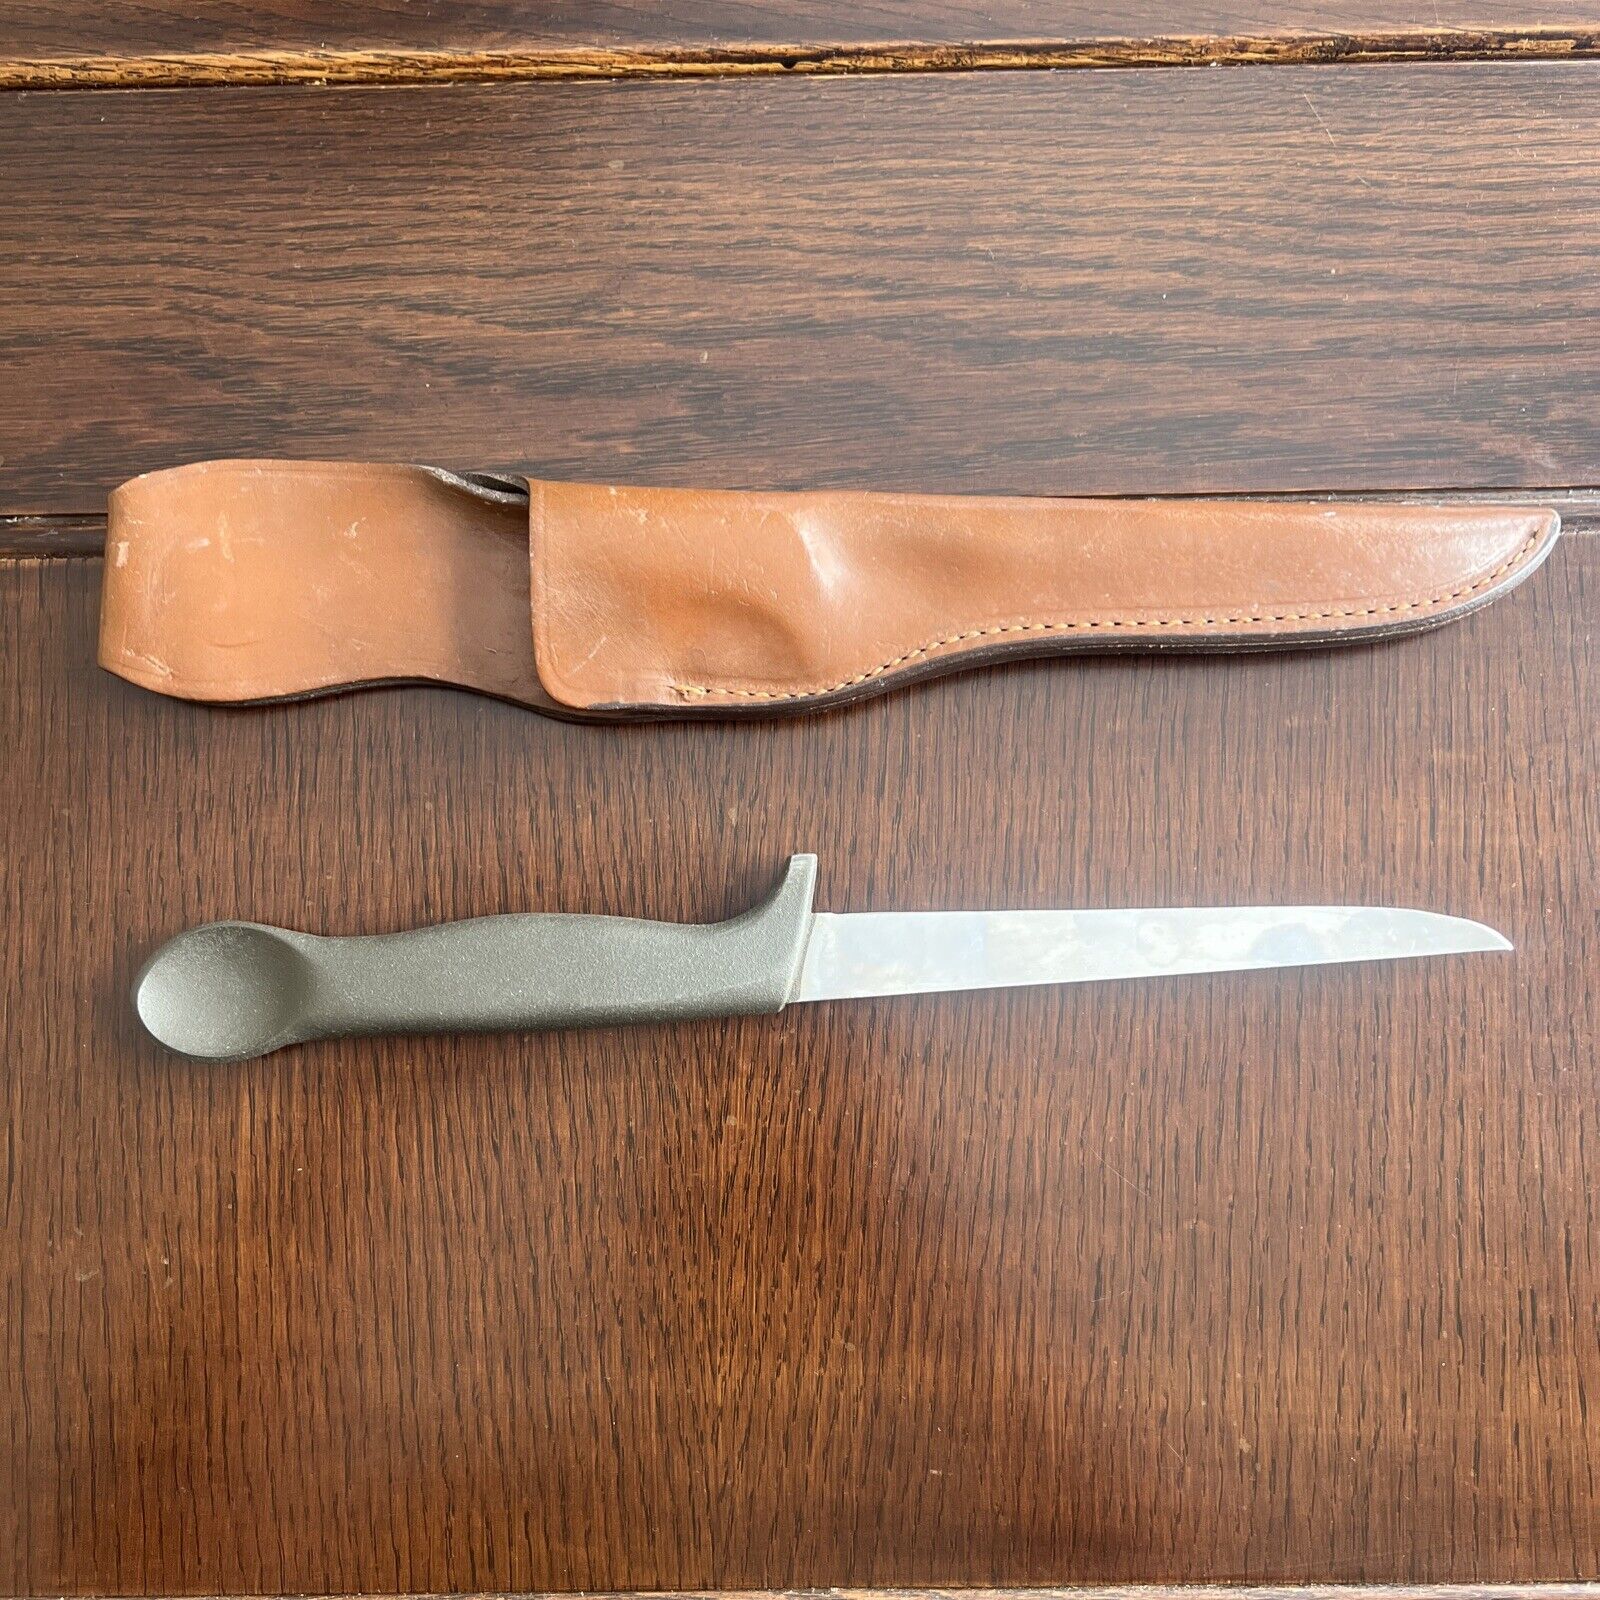 Vintage Gerber Coho 60’s-70’s Fishing Knife Portland OR USA W/ Sheath